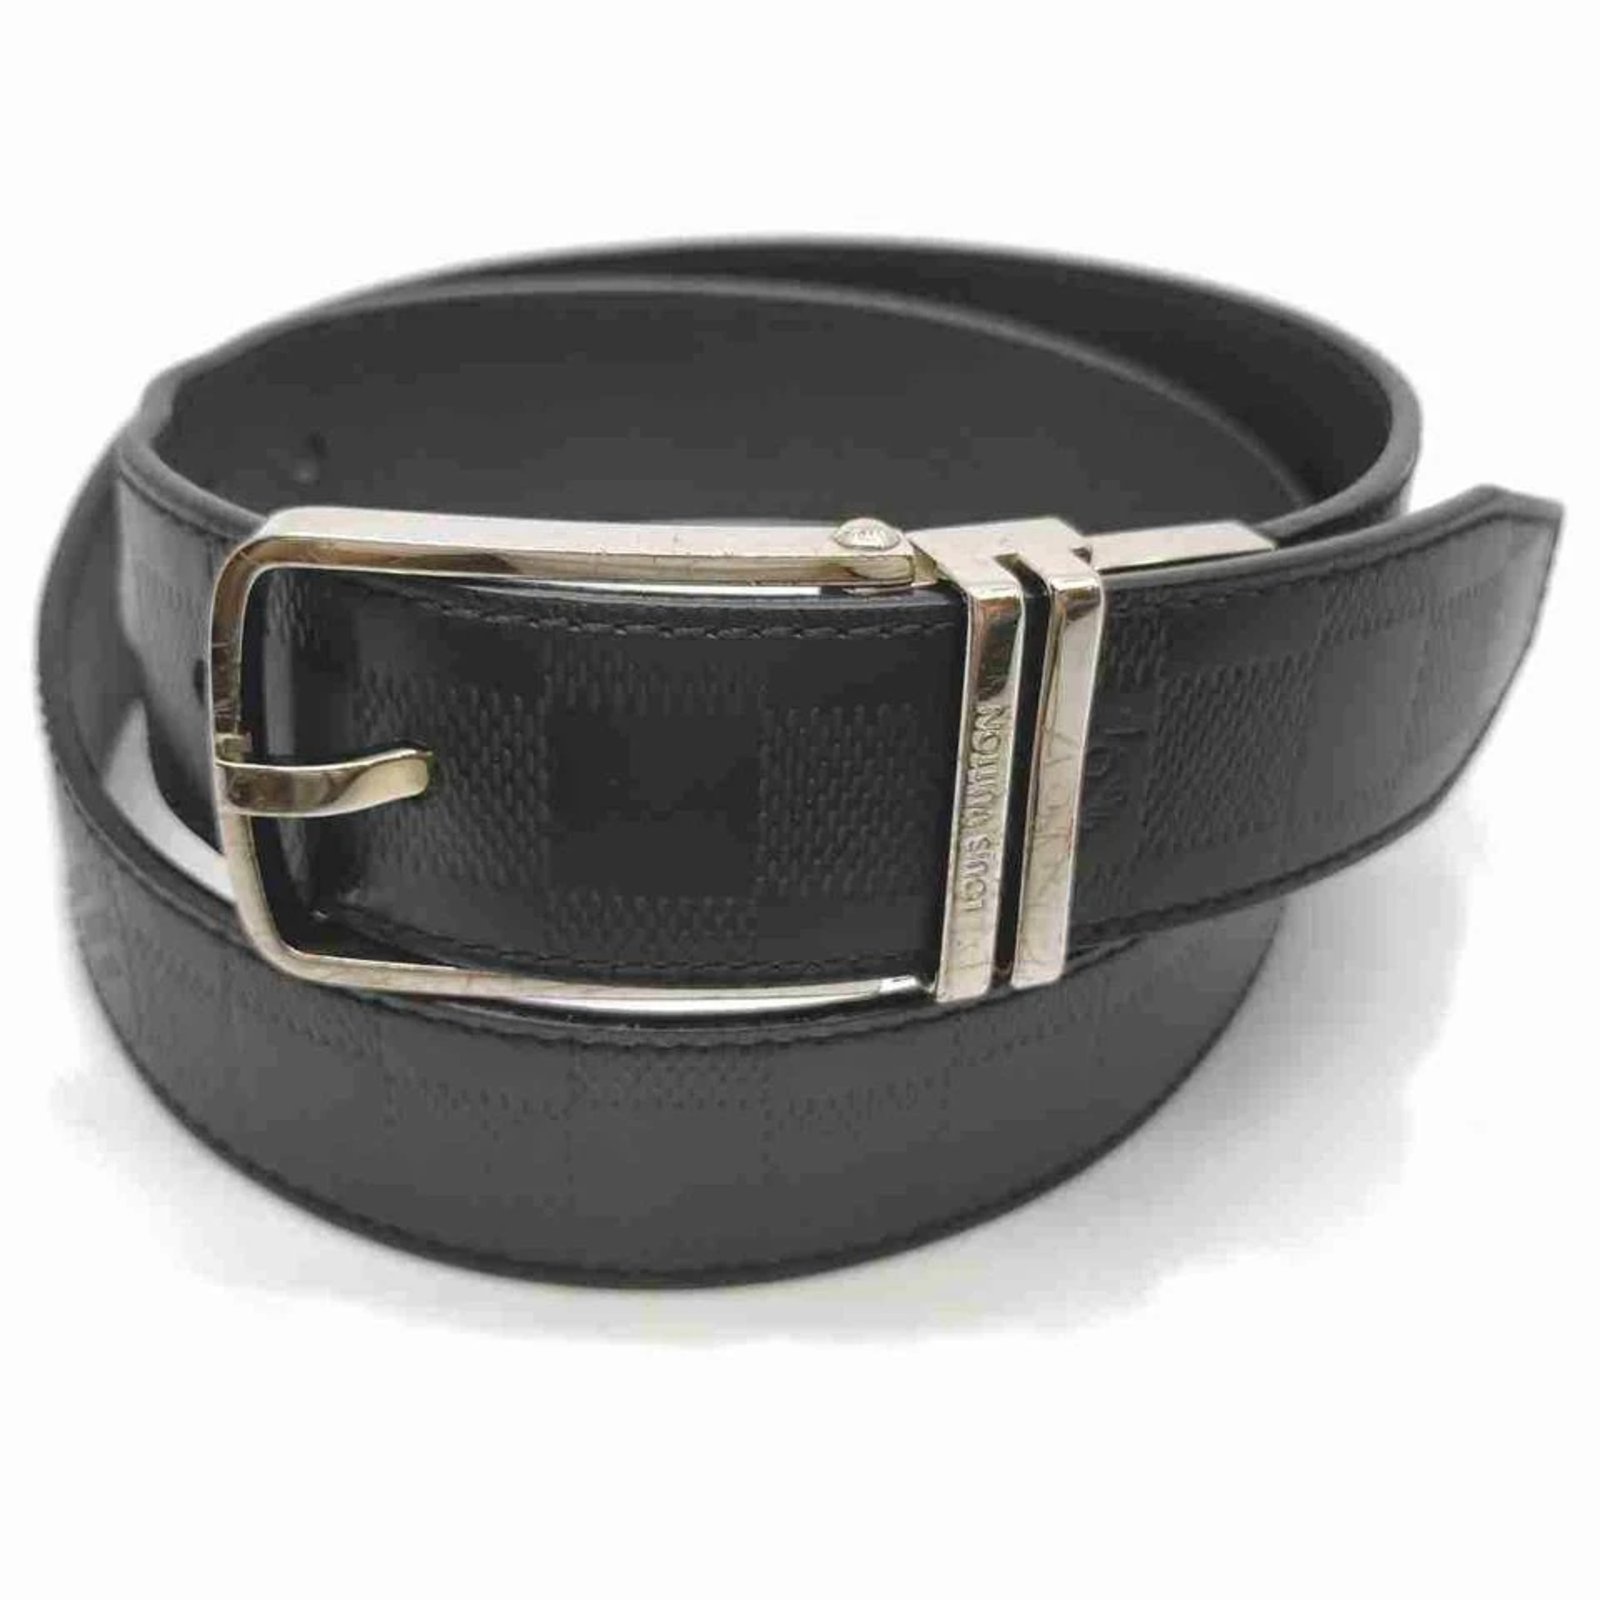 LOUIS VUITTON Belts Initiales Louis Vuitton Leather For Male 85 Cm